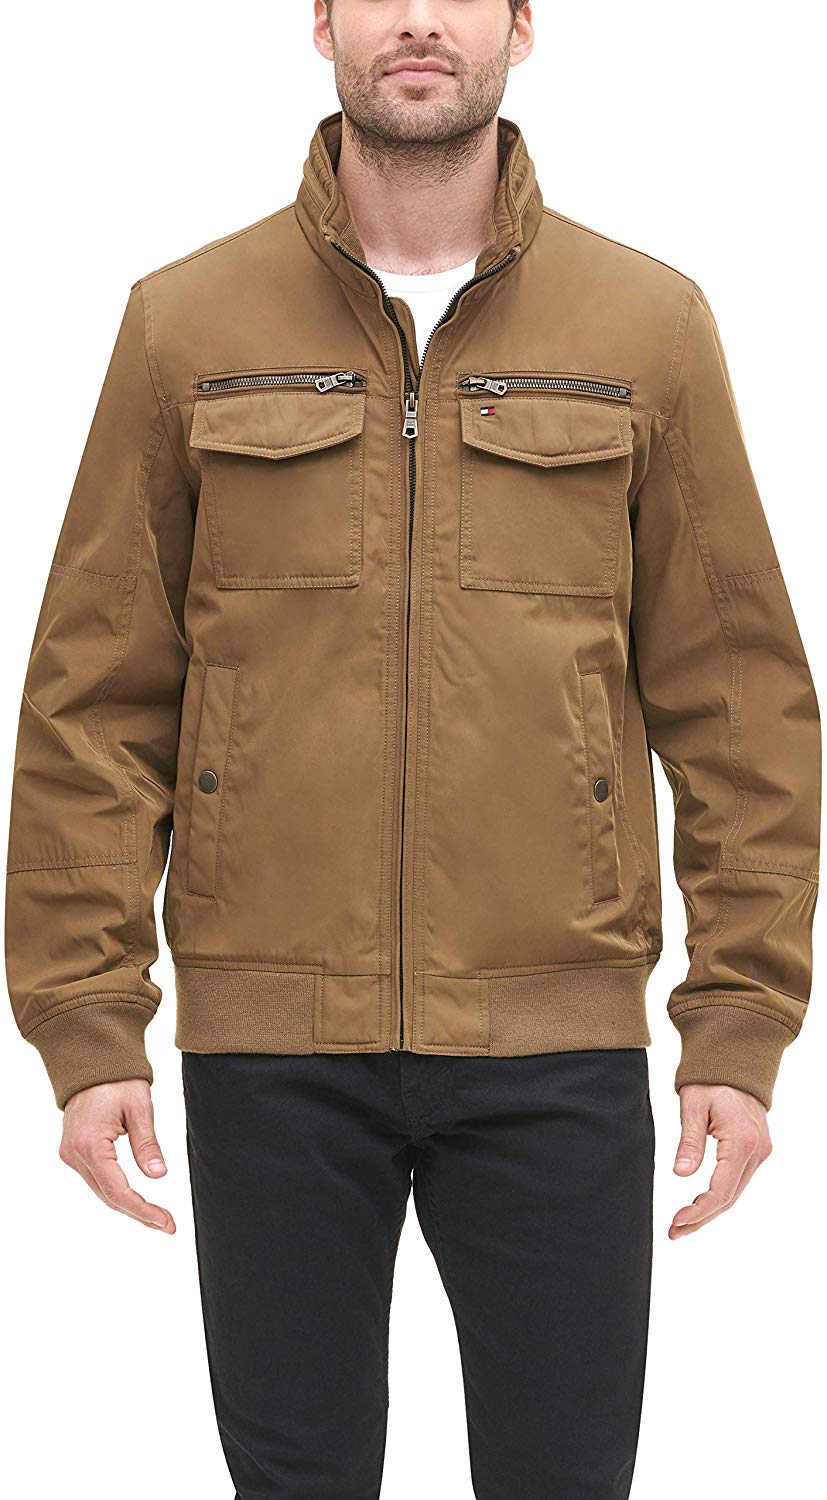 tommy hilfiger men's performance bomber jacket